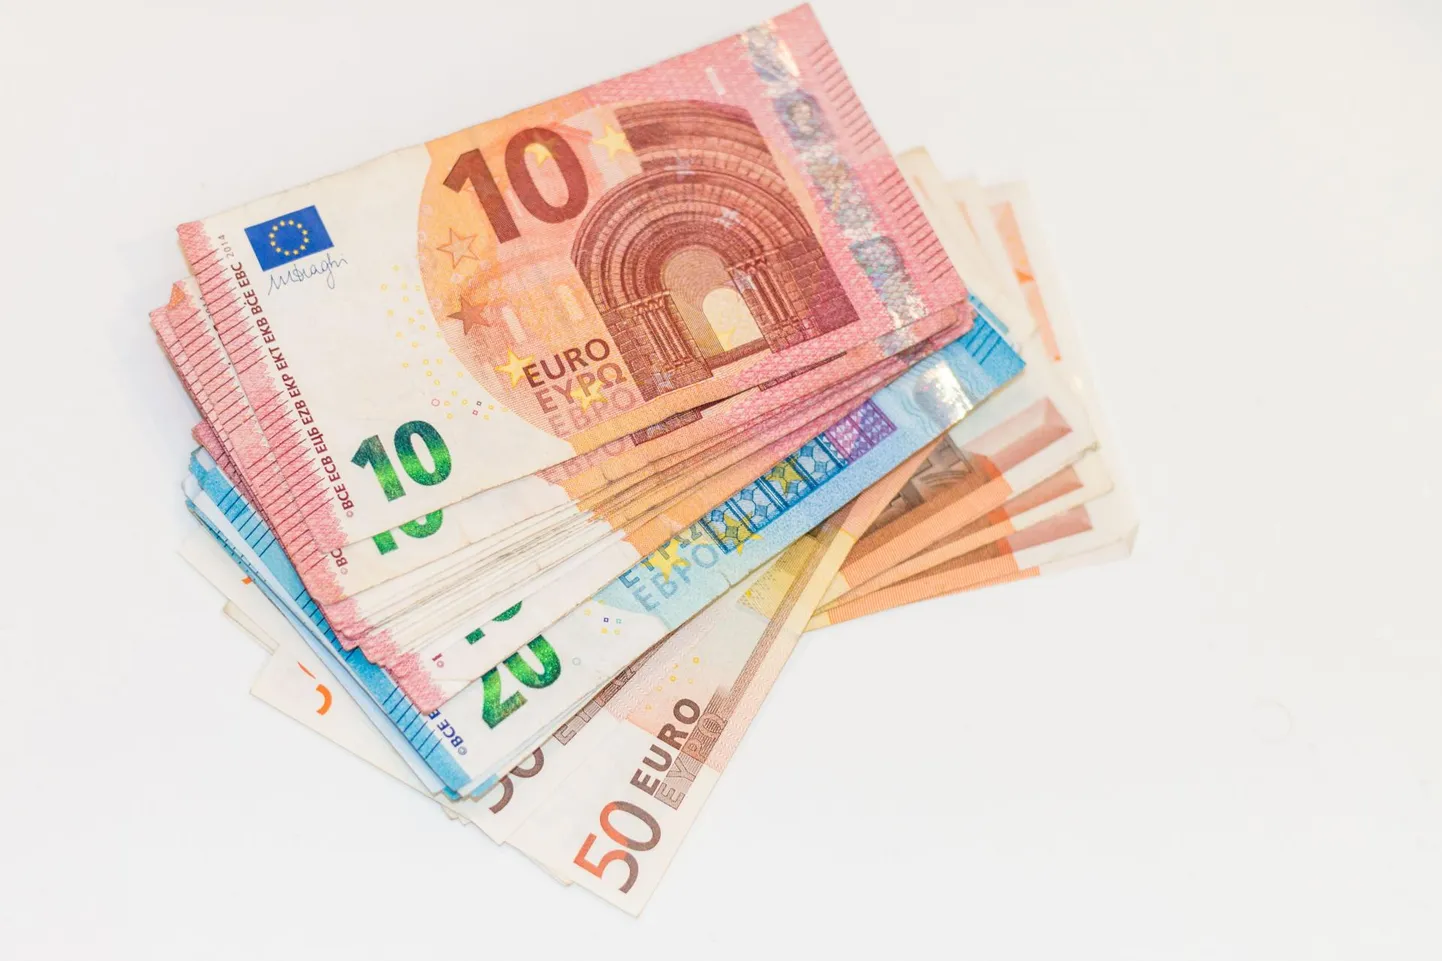 Valitsus külvas toetusteks 745 miljonit eurot.


Foto Arvo Meeks/Valgamaalane